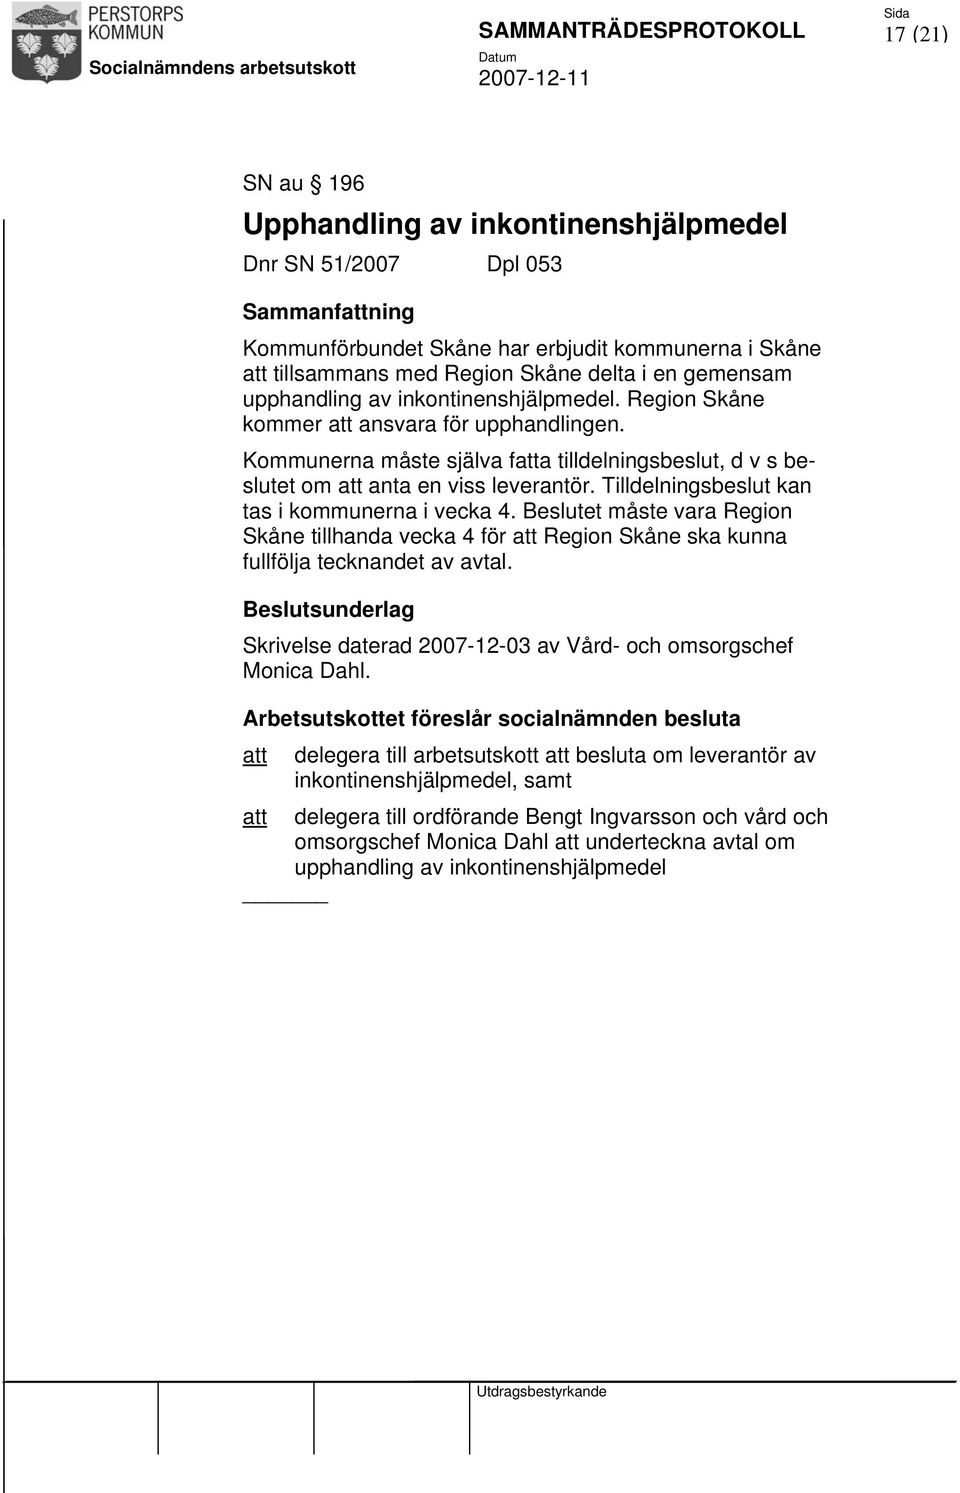 Tilldelningsbeslut kan tas i kommunerna i vecka 4. Beslutet måste vara Region Skåne tillhanda vecka 4 för att Region Skåne ska kunna fullfölja tecknandet av avtal.